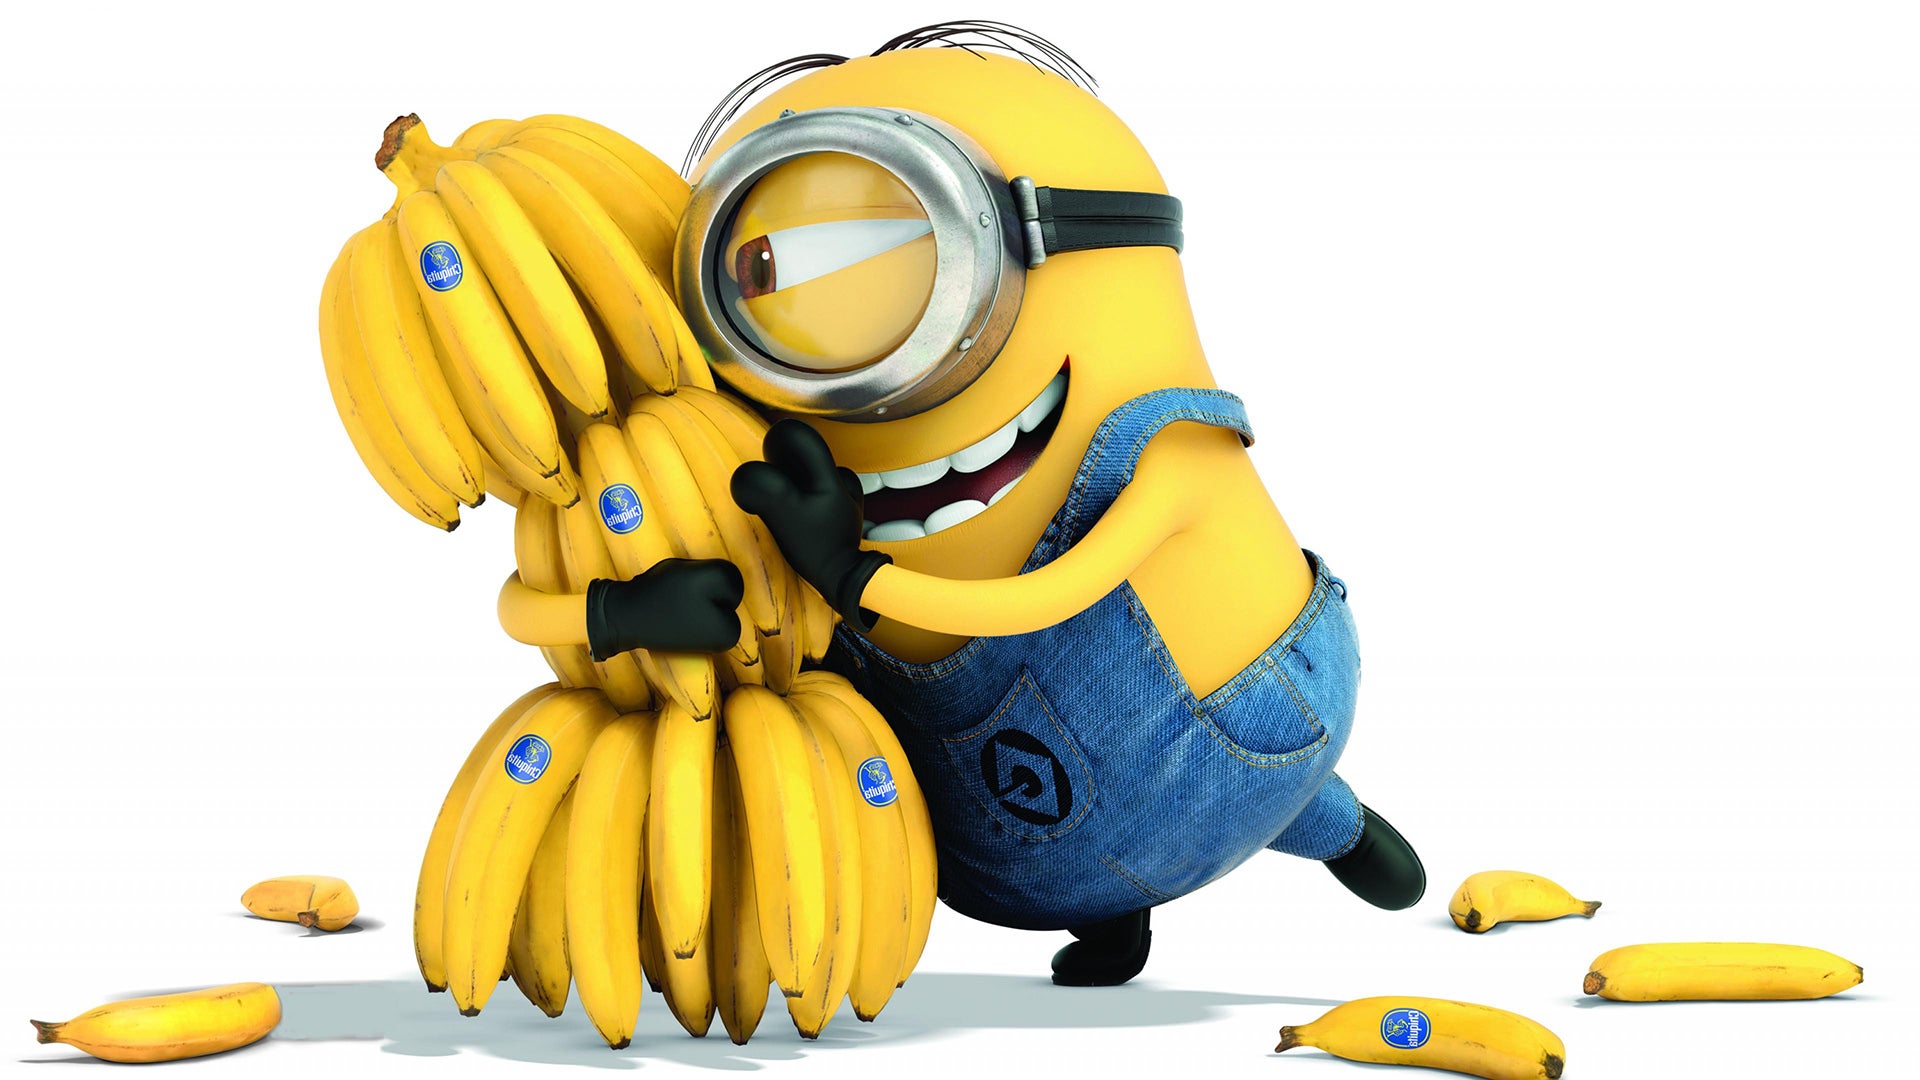 点击游戏《香蕉》成Steam平台最受欢迎游戏记录第9名 《博德之门3》跌出前10